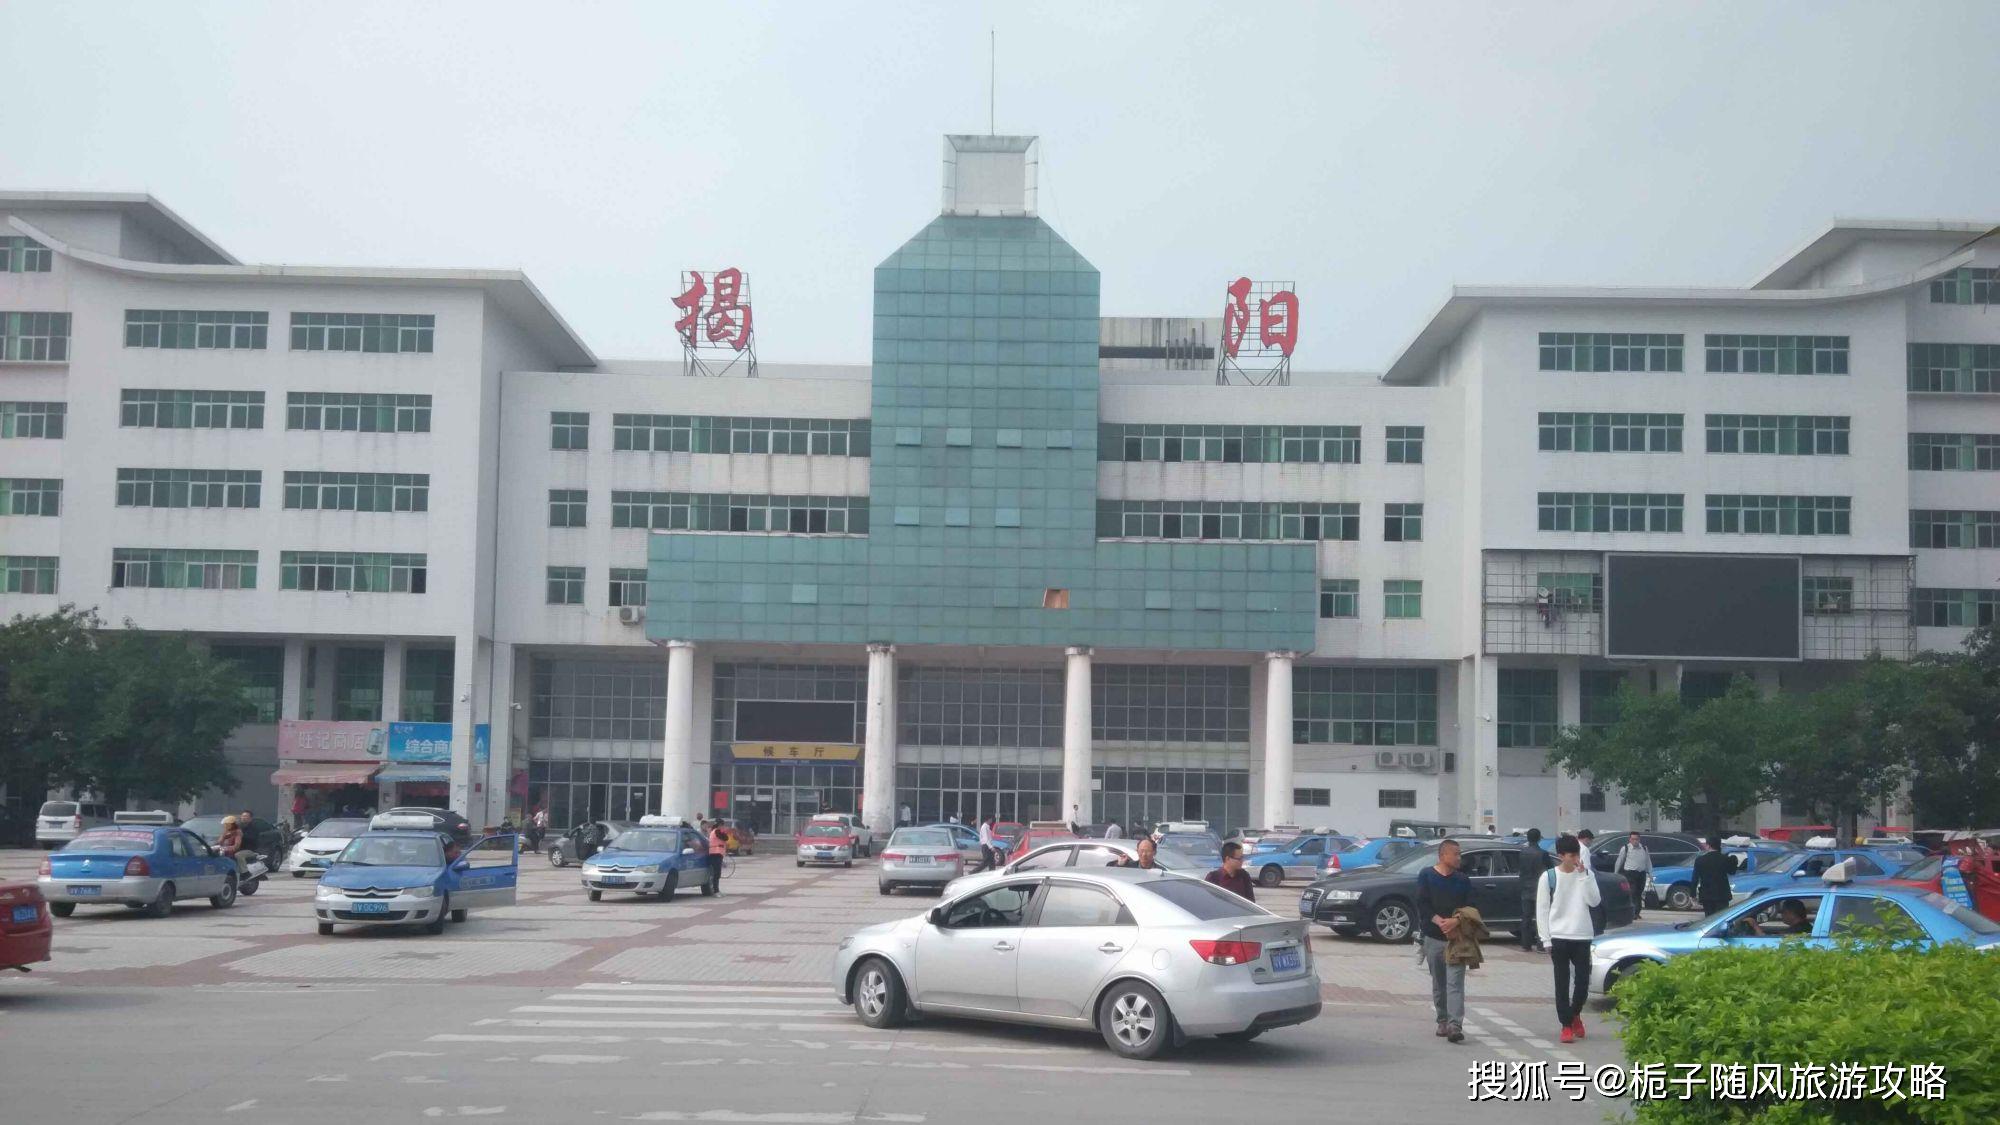 原创揭阳市的主要铁路车站之一——揭阳南站